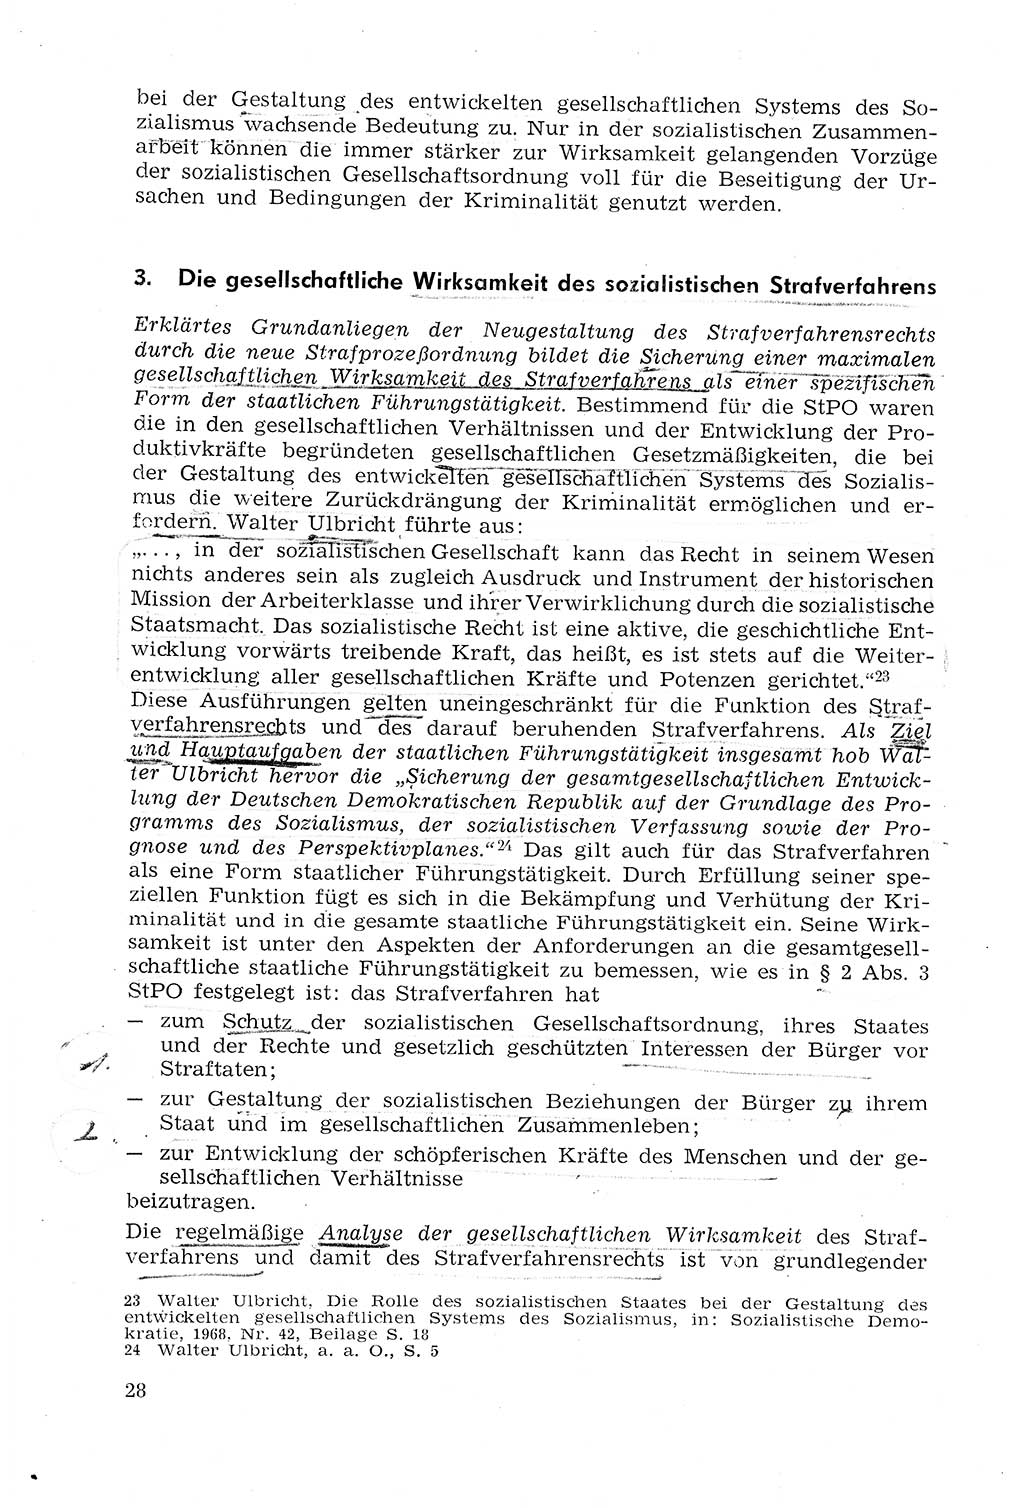 Strafprozeßrecht der DDR (Deutsche Demokratische Republik), Lehrmaterial 1969, Seite 28 (Strafprozeßr. DDR Lehrmat. 1969, S. 28)